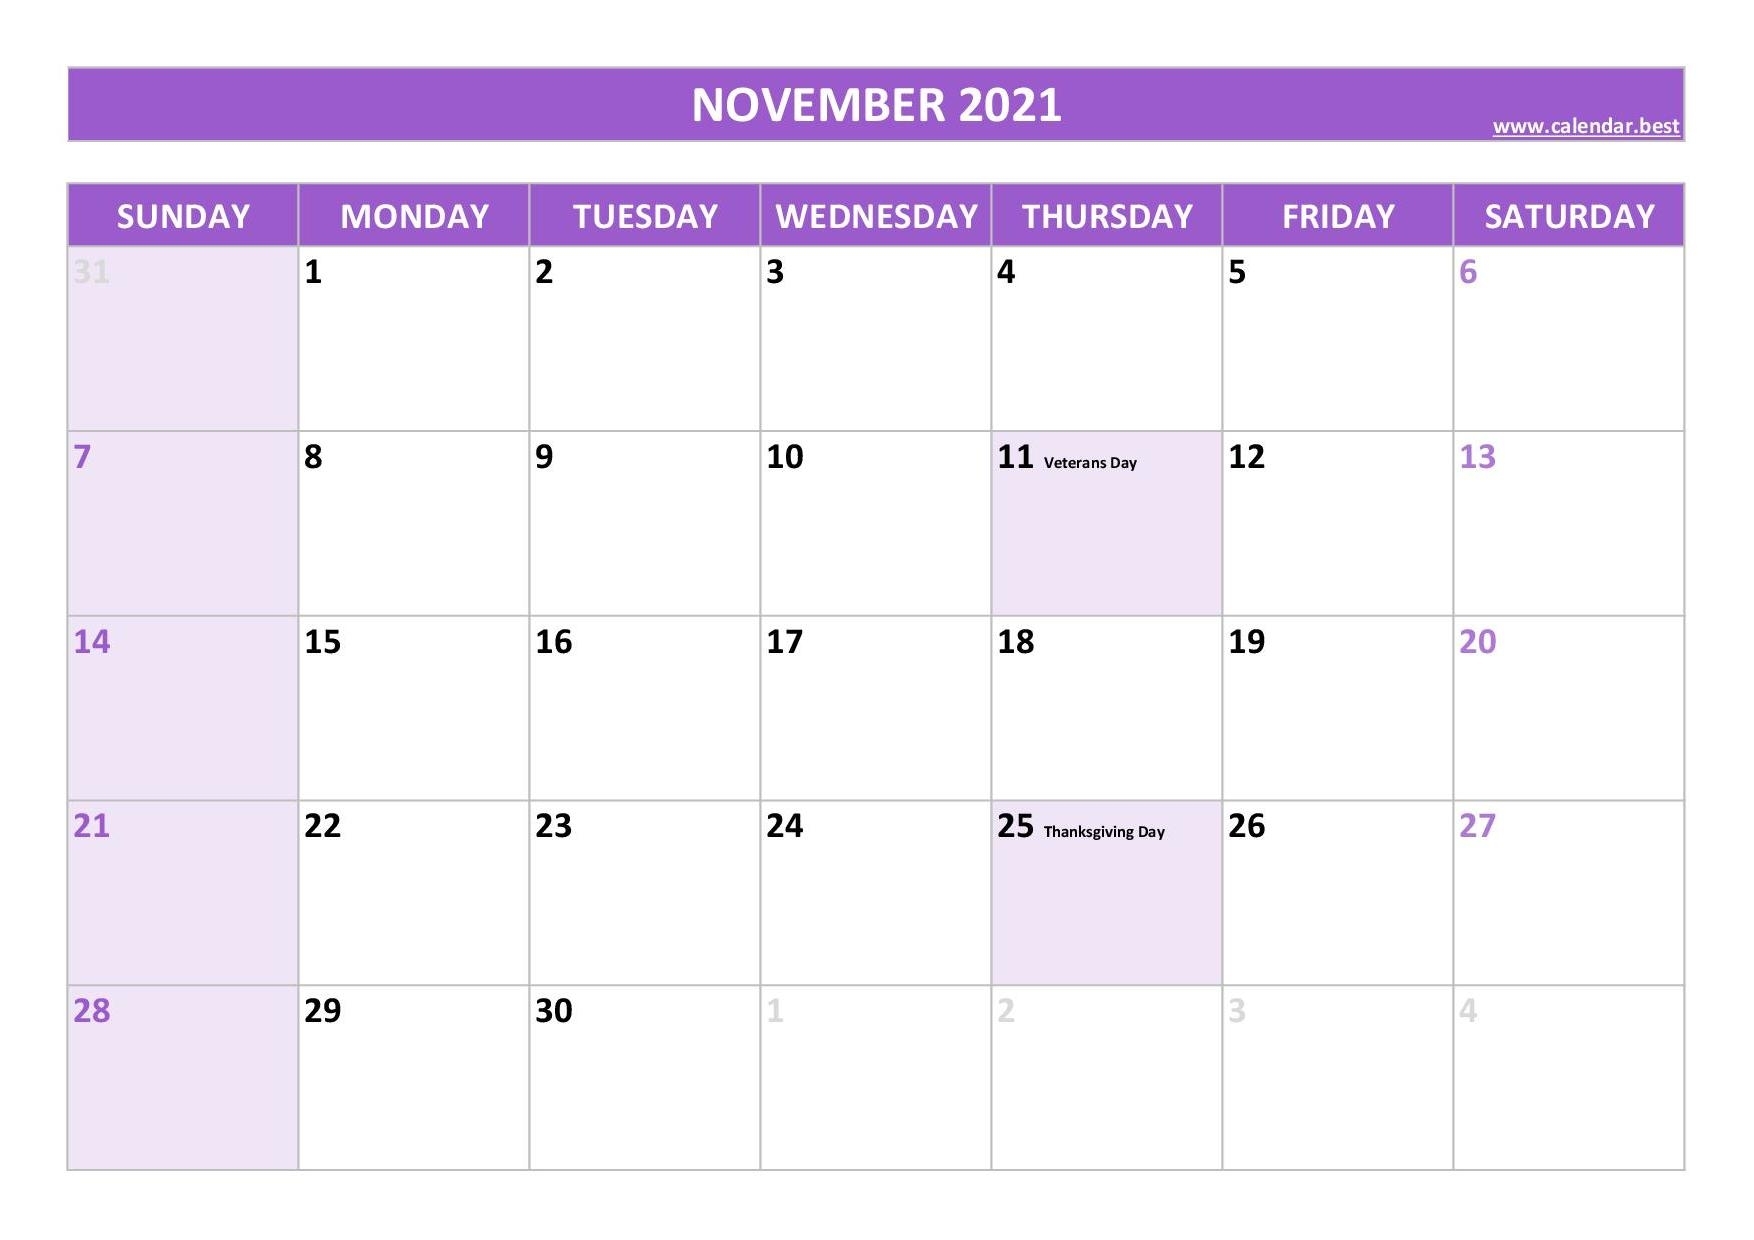 November 2021 Calendar -Calendar.best